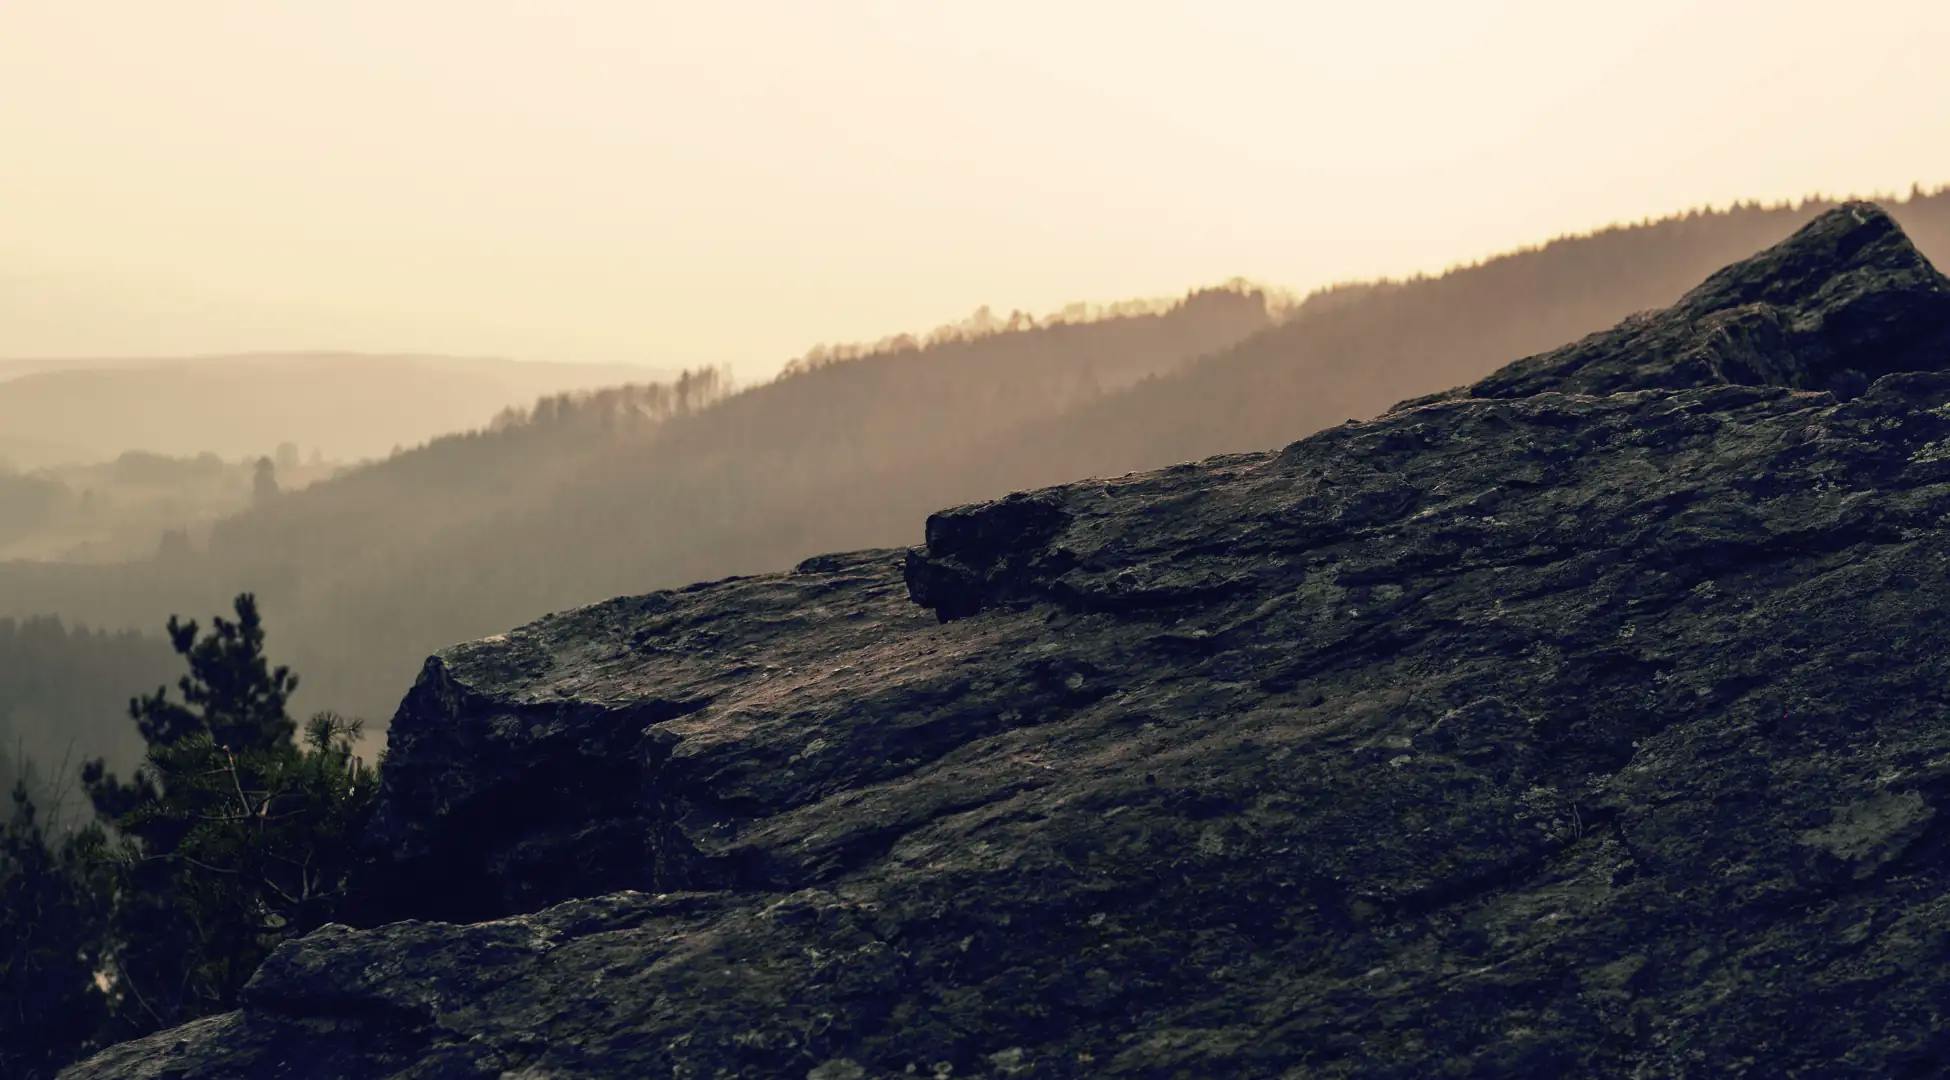 Vue depuis le sommet rocheux au crépuscule avec des forêts brumeuses en arrière-plan, capturant l'essence des randonnées en pleine nature avec Pop'in.